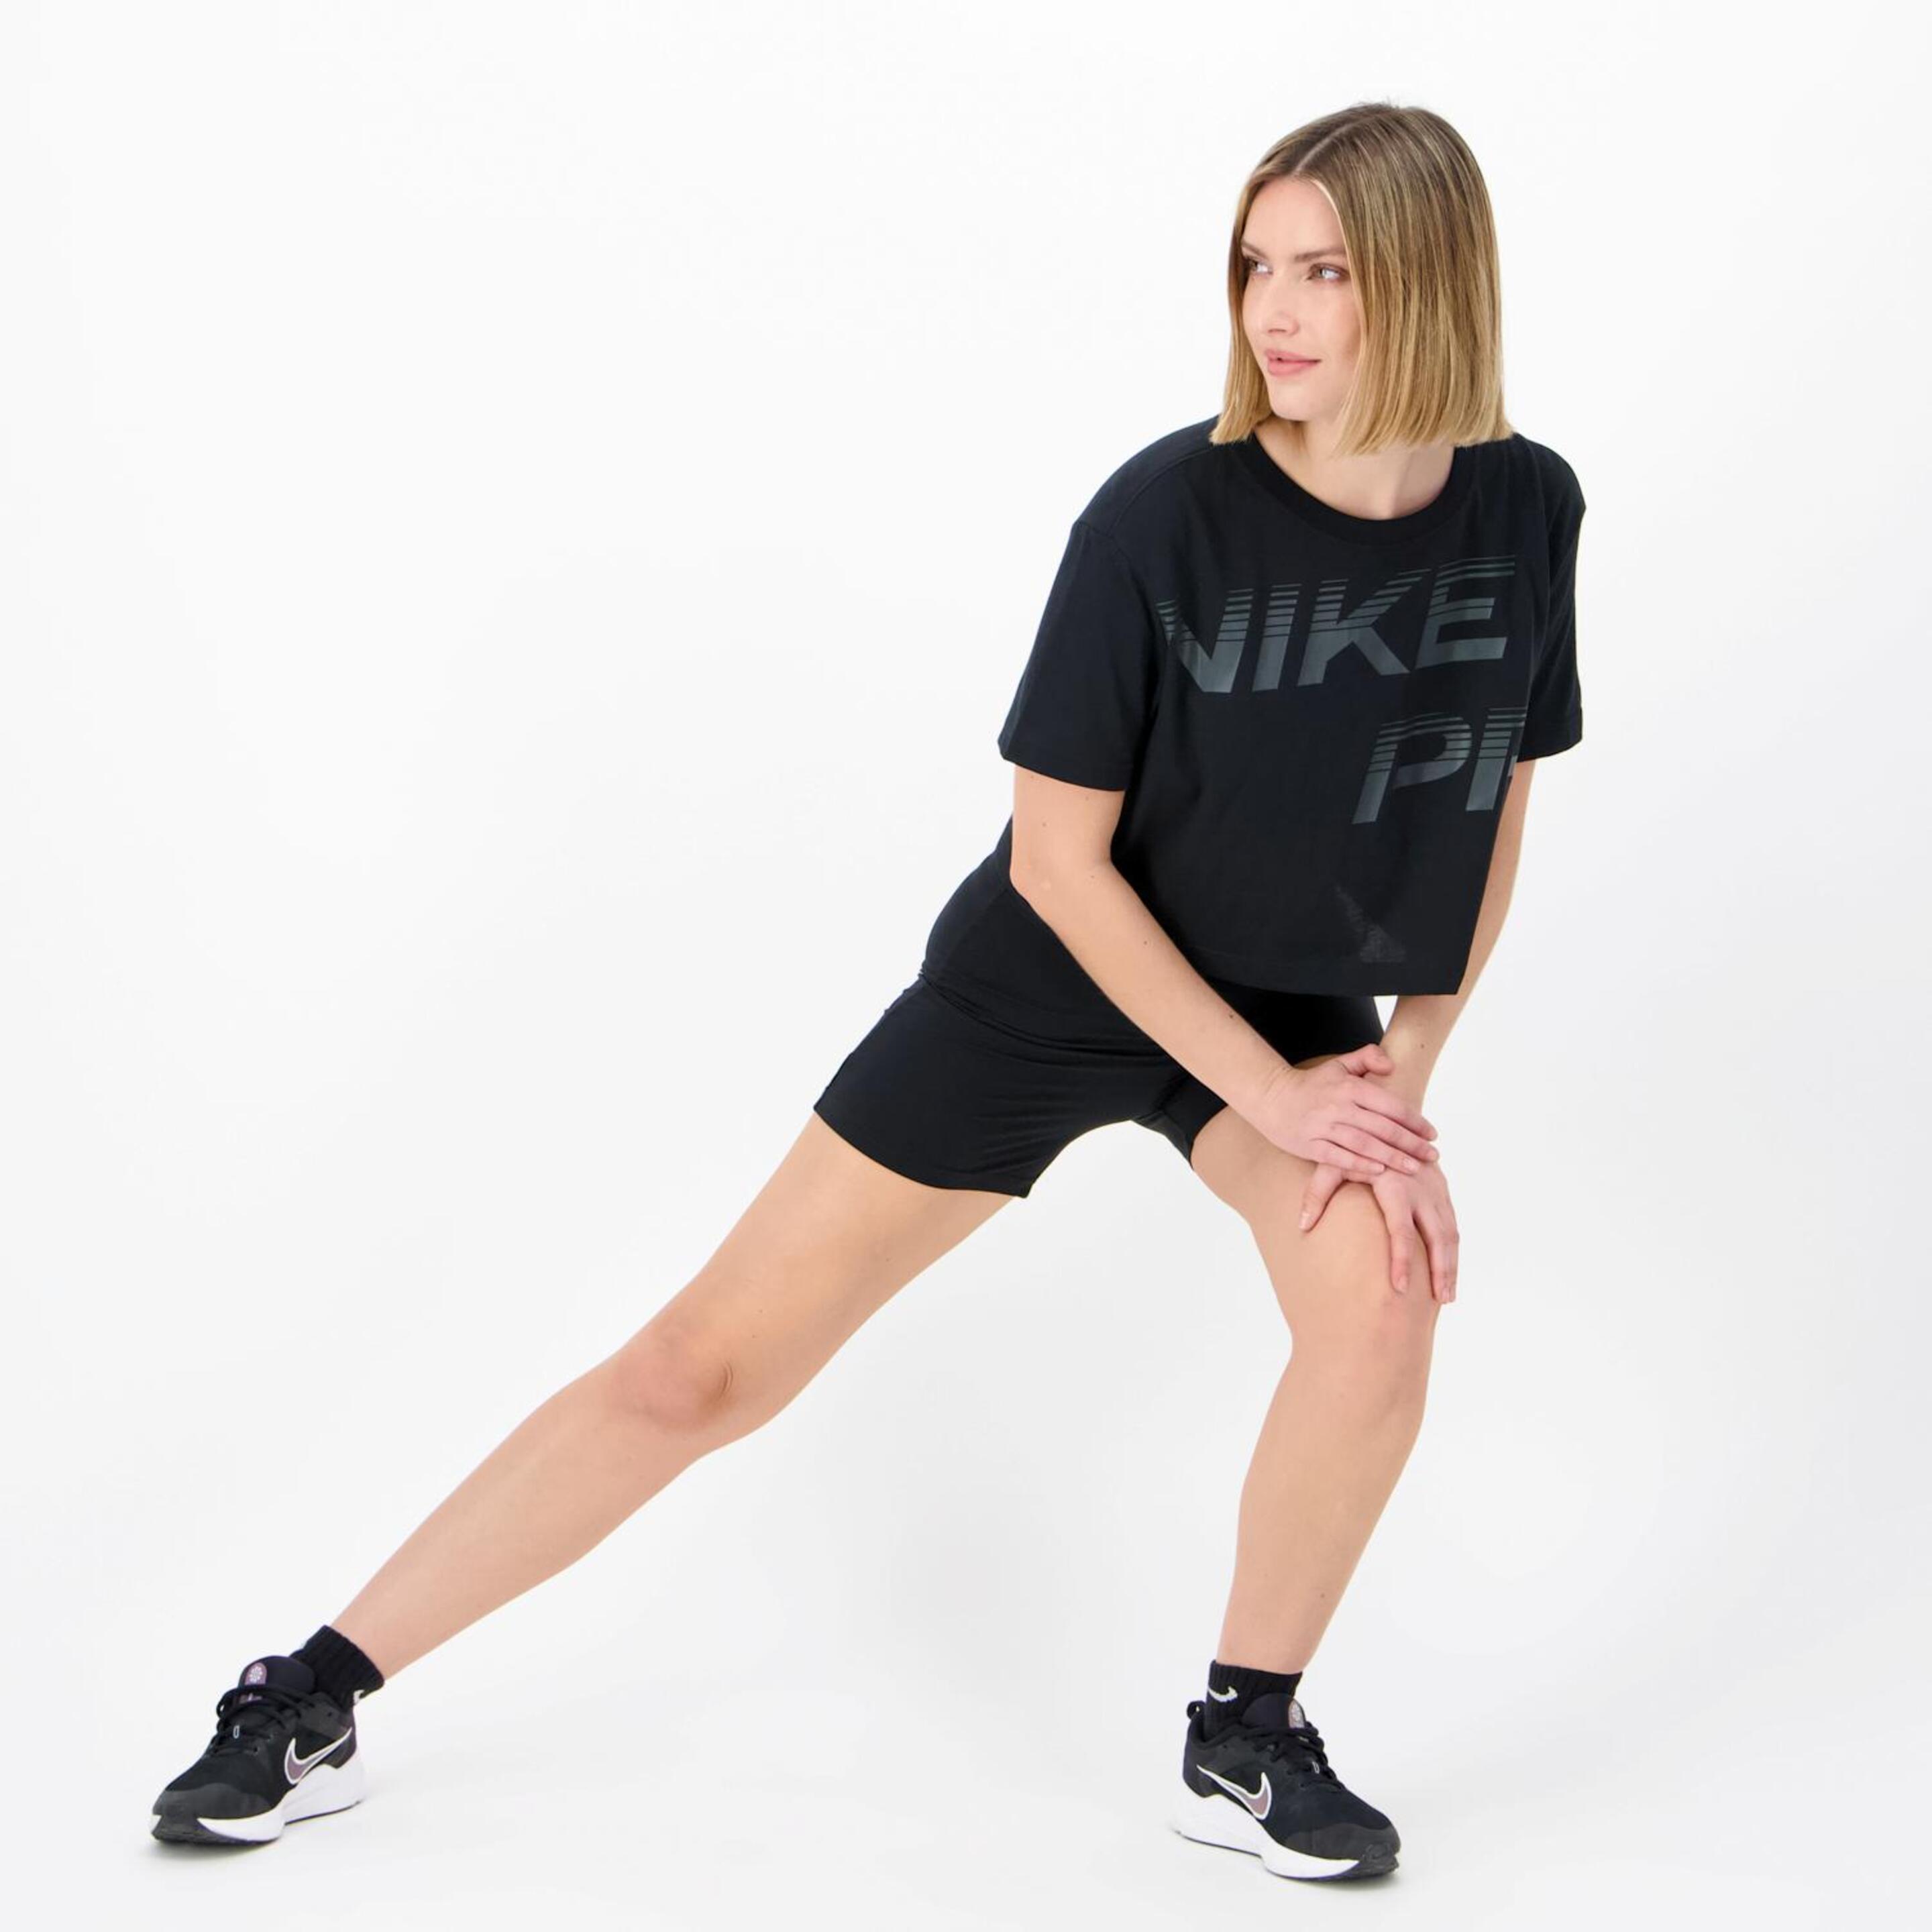 Camiseta Nike - Negro - Camiseta Boxy Mujer